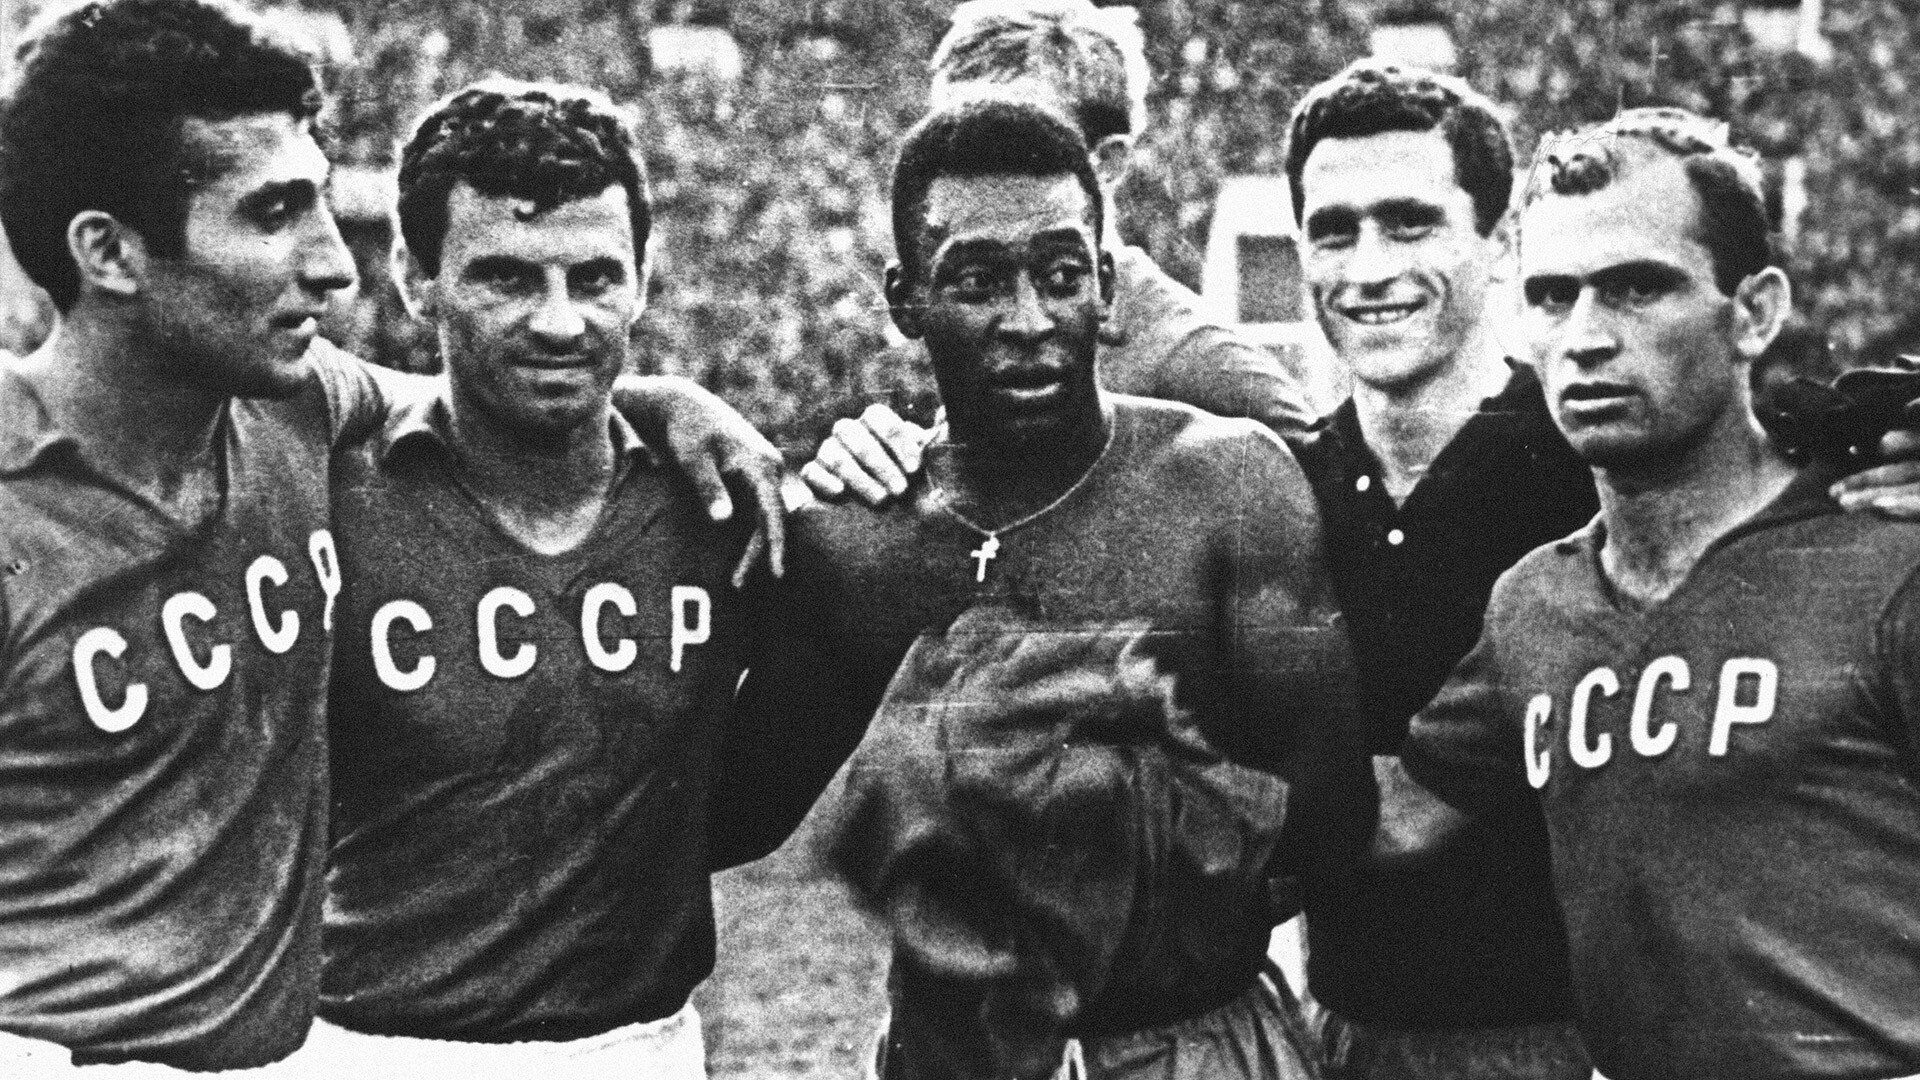 Pelé di antara para pemain sepak bola Soviet setelah pertandingan persahabatan di Moskow, 1965.